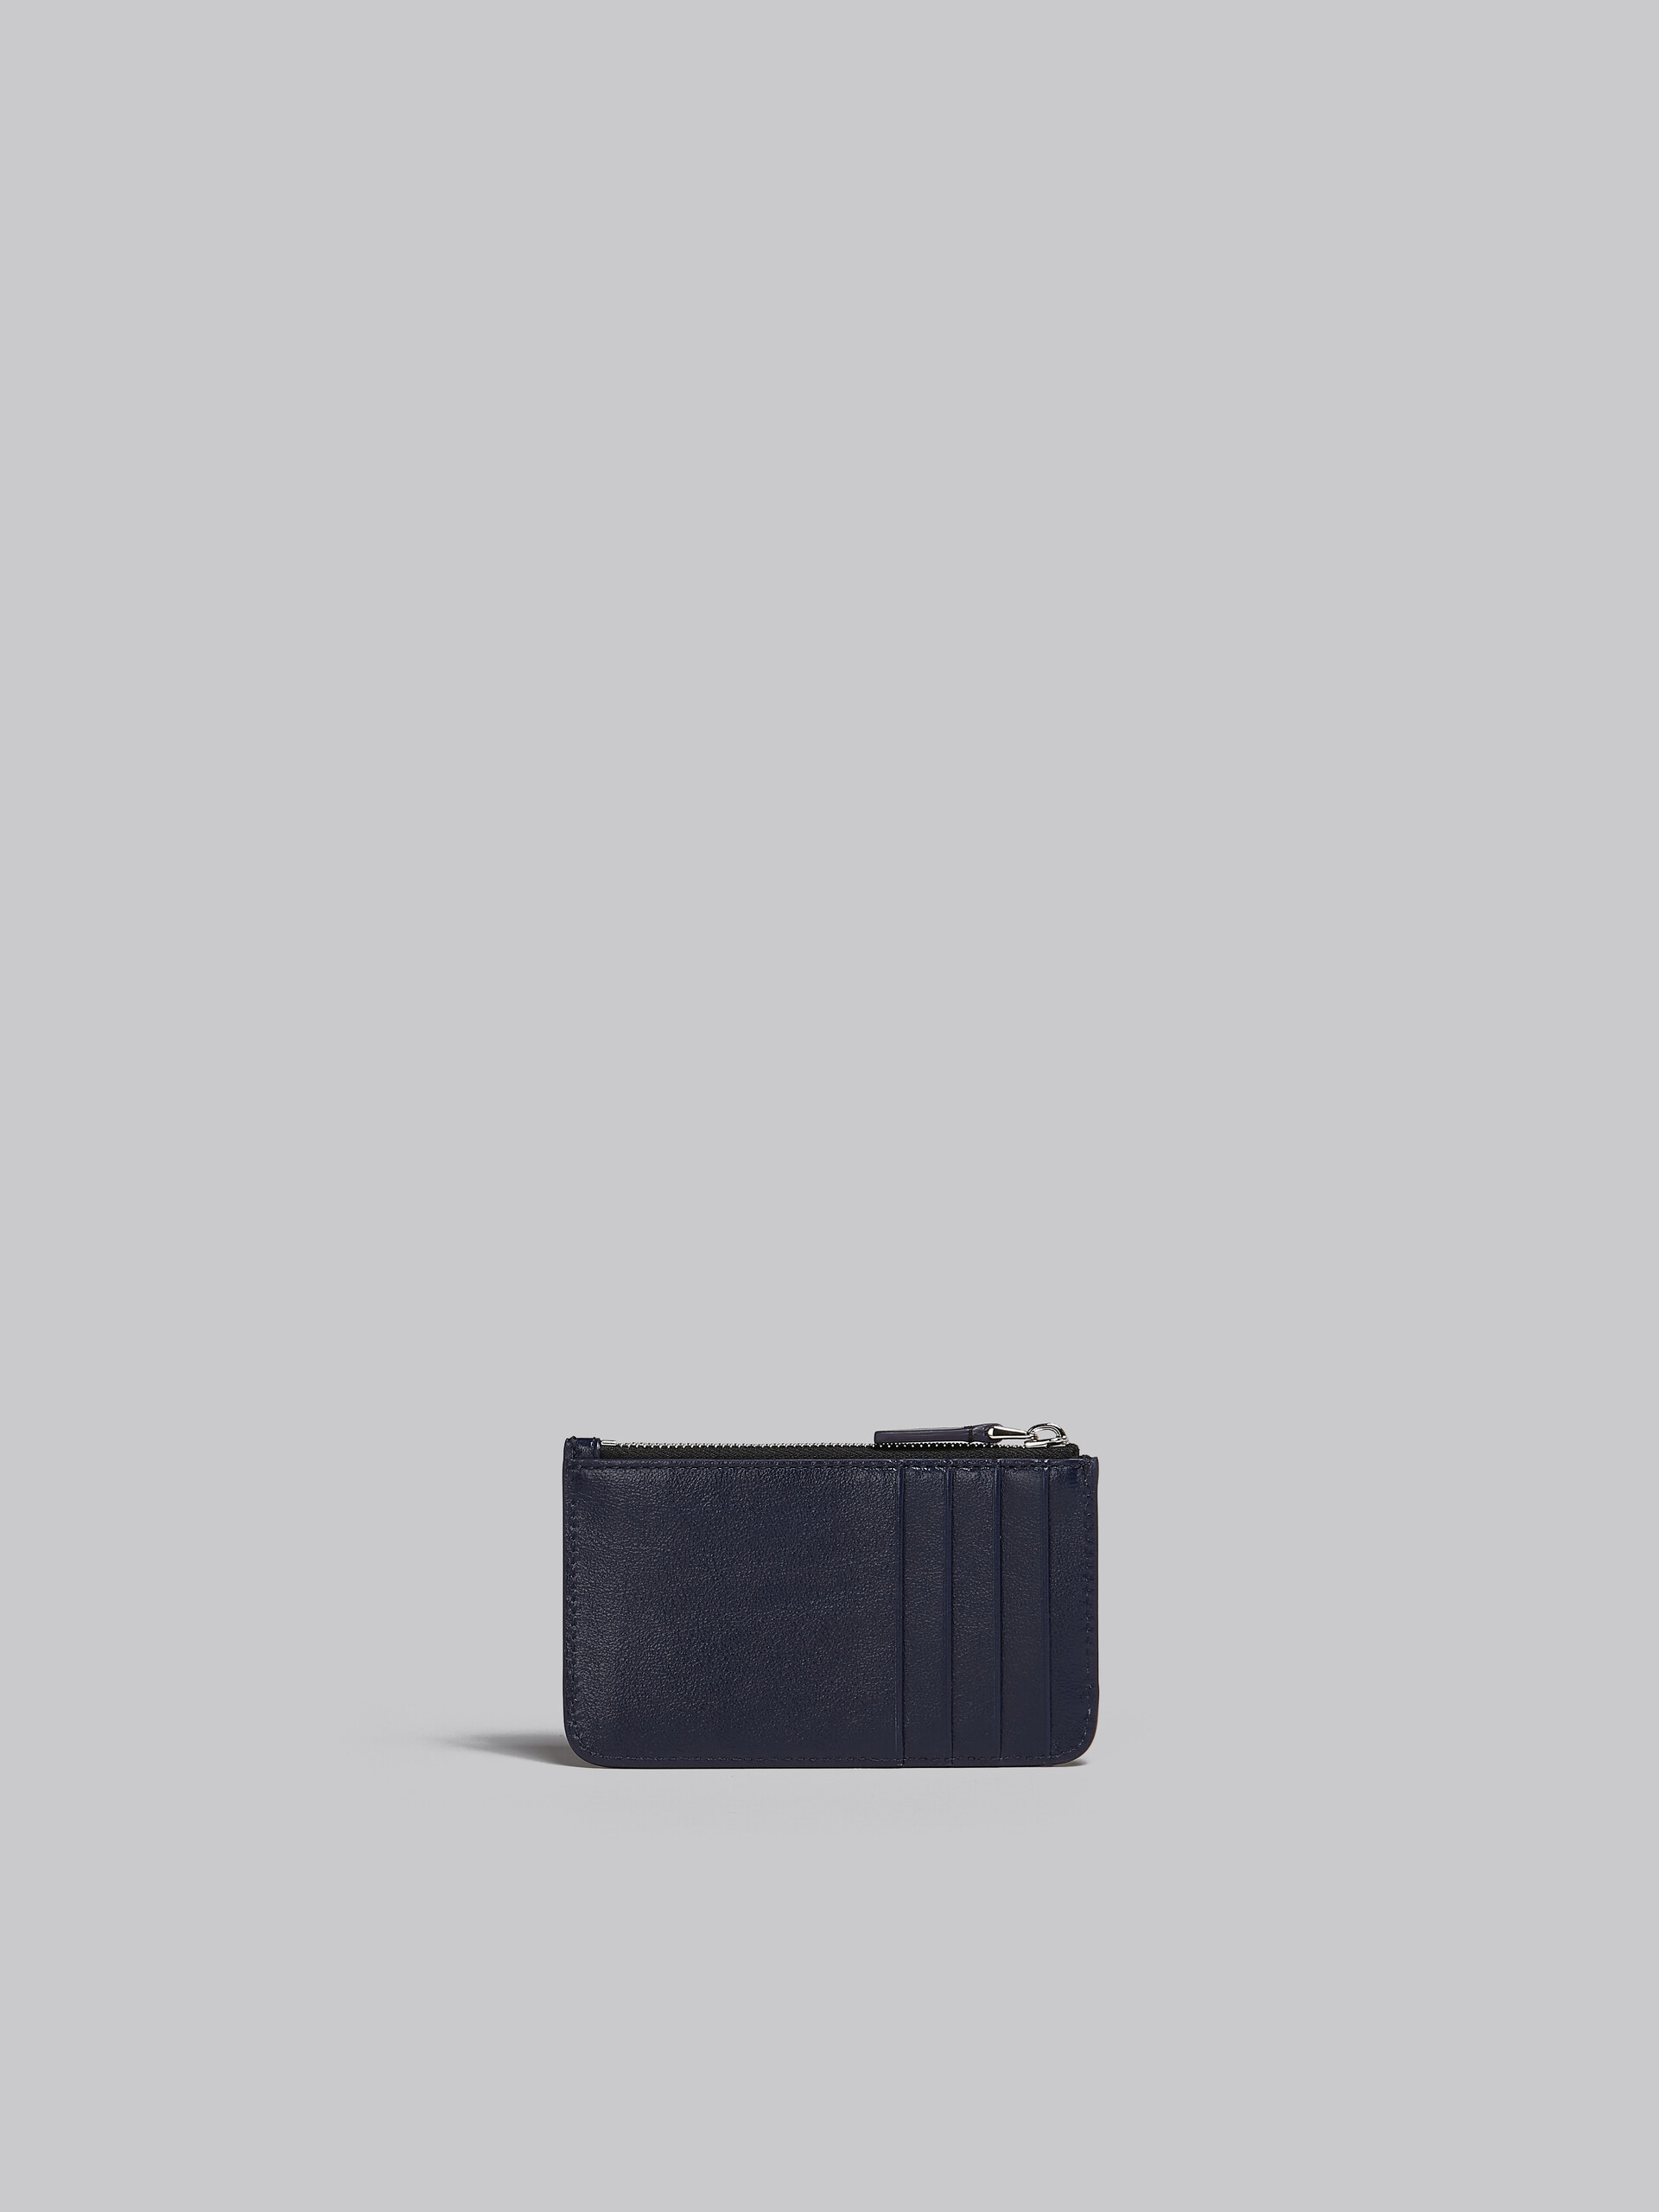 Porte-cartes en cuir bleu marine et noir - Portefeuilles - Image 3